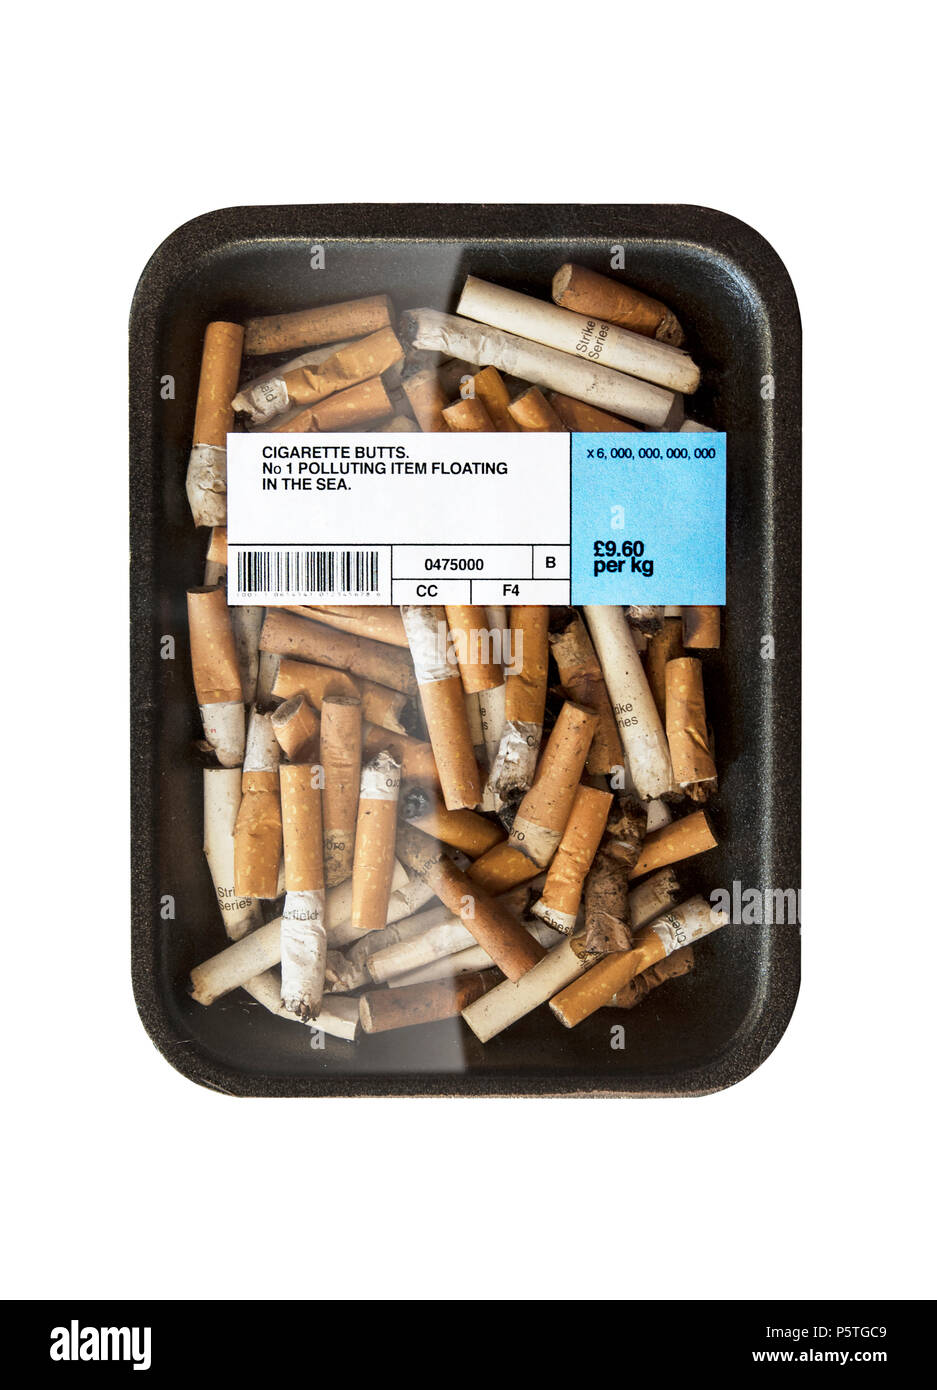 Una representación gráfica de los daños causados por la contaminación de cigarrillos a través de la actividad humana Foto de stock